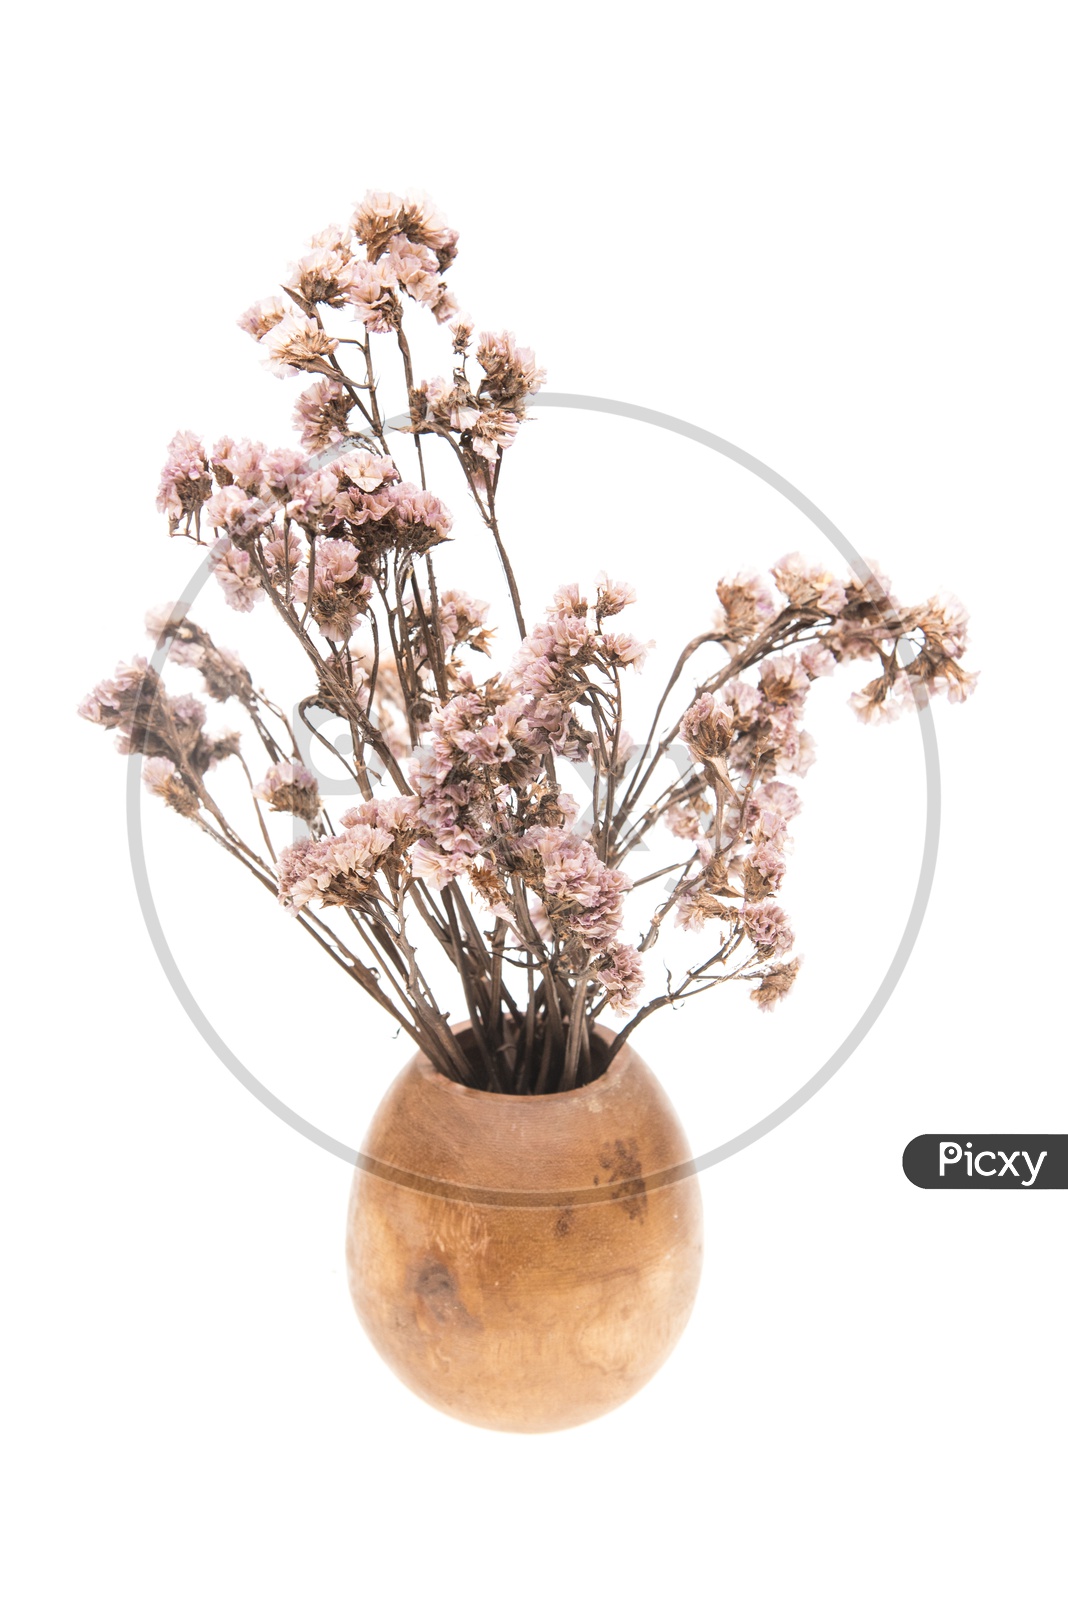 Dry vintage bougainvillea flowers in vase